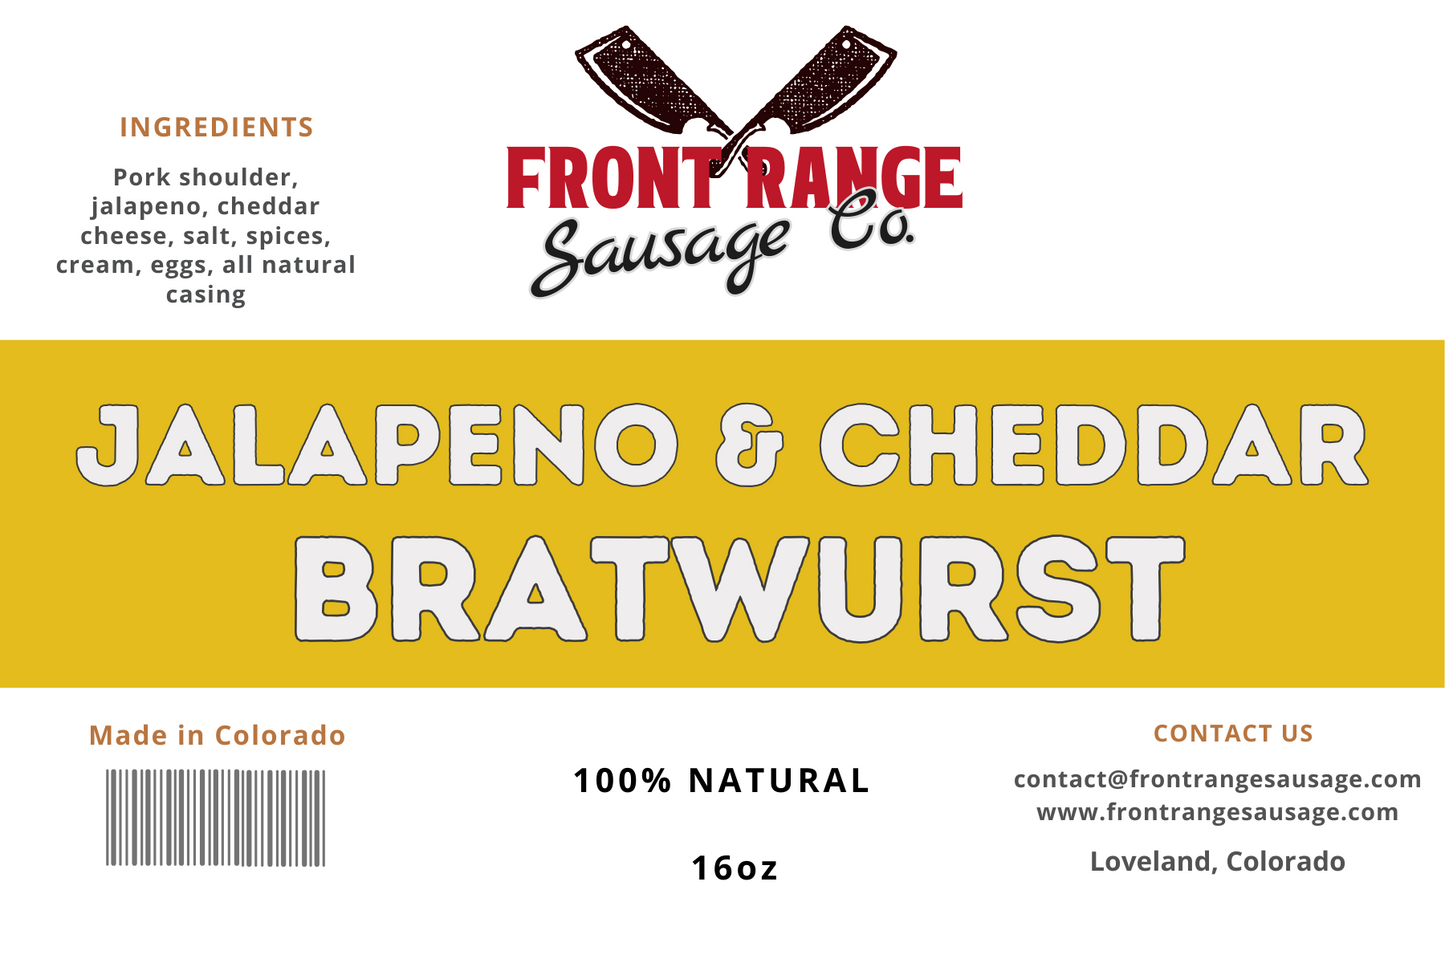 Jalapeno & Cheddar Bratwurst